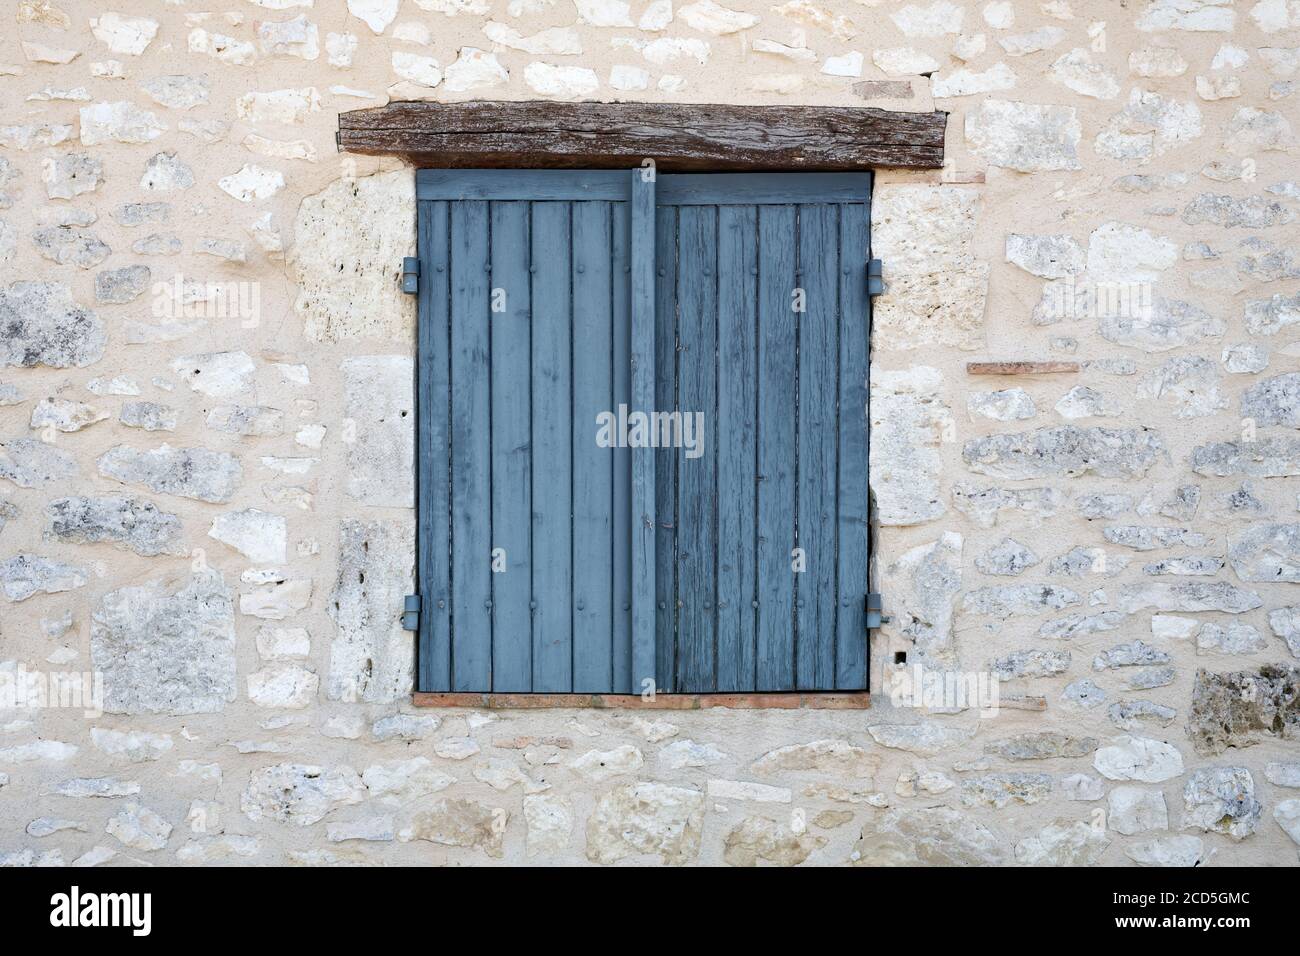 Volets de fenêtre fermés dans un mur en pierre Banque D'Images